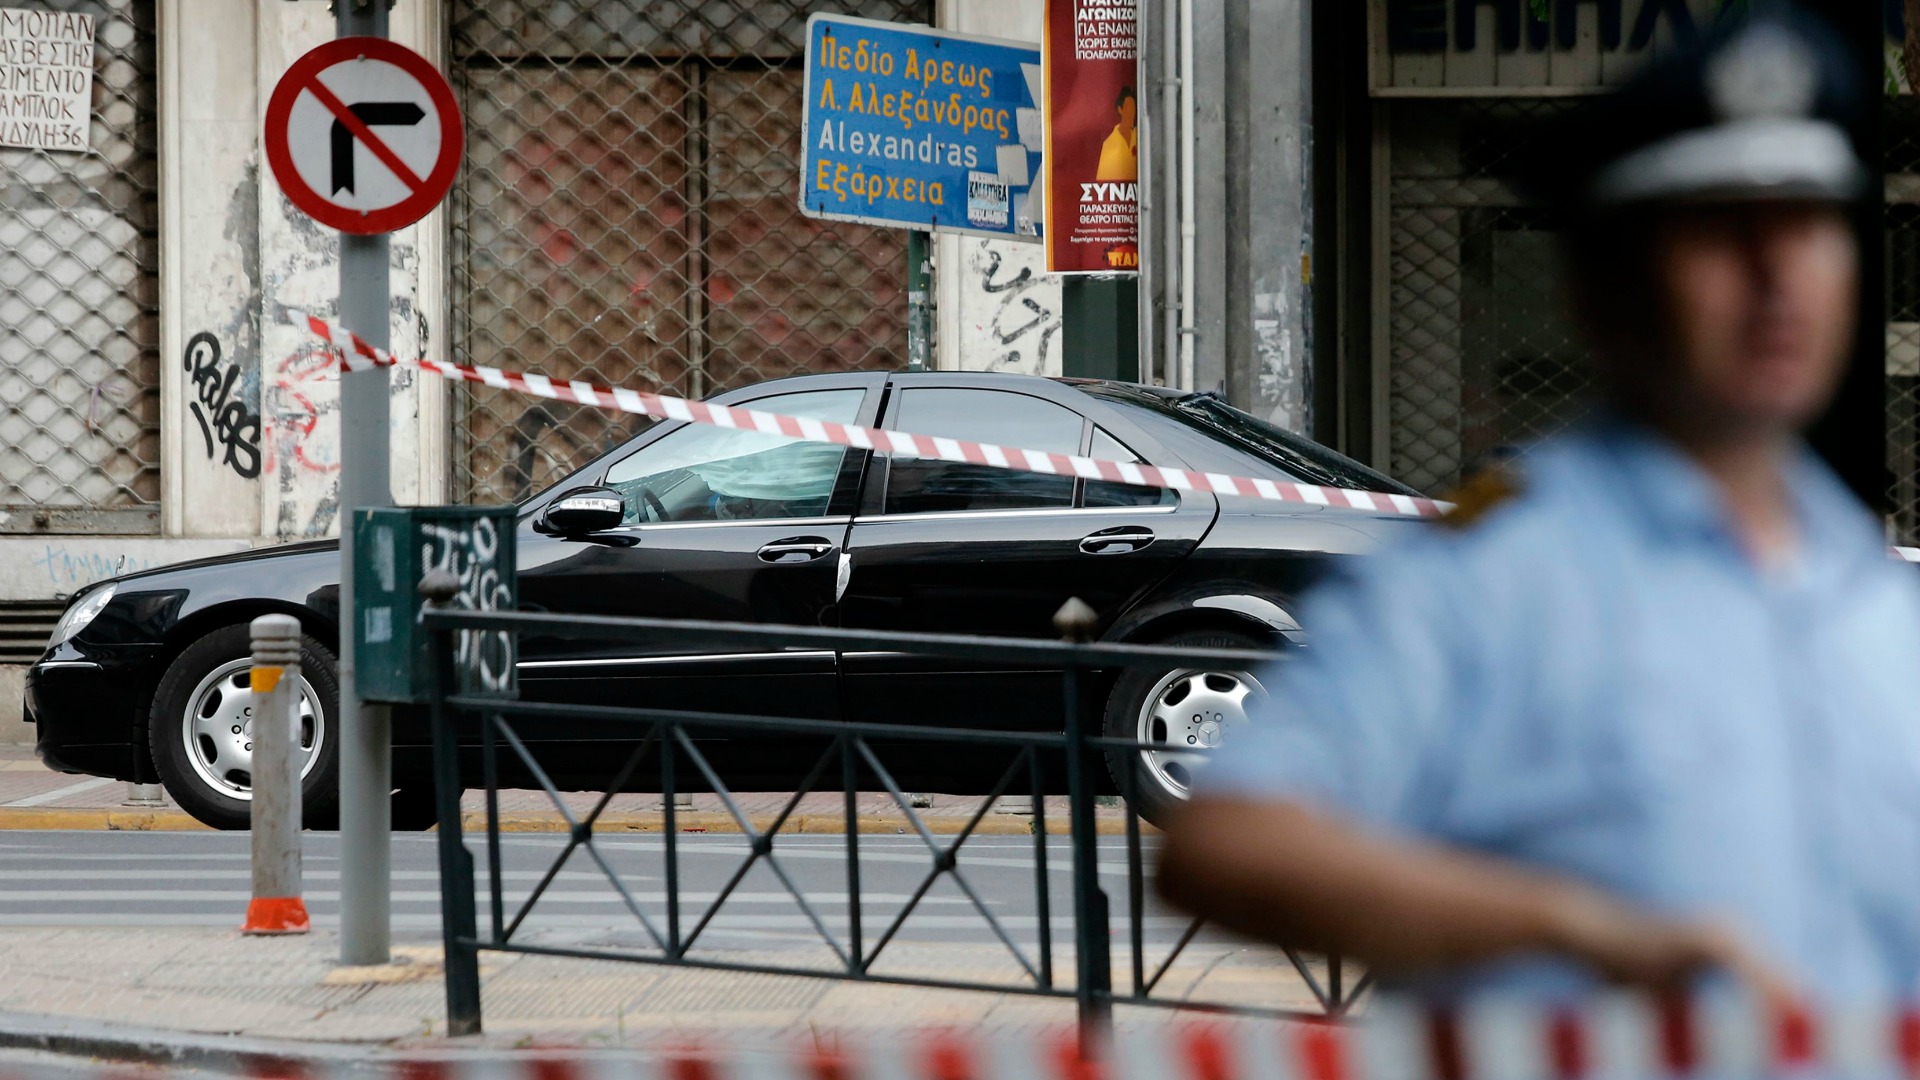 Herido el exprimer ministro griego Lucas Papademos en una explosión en su coche 2